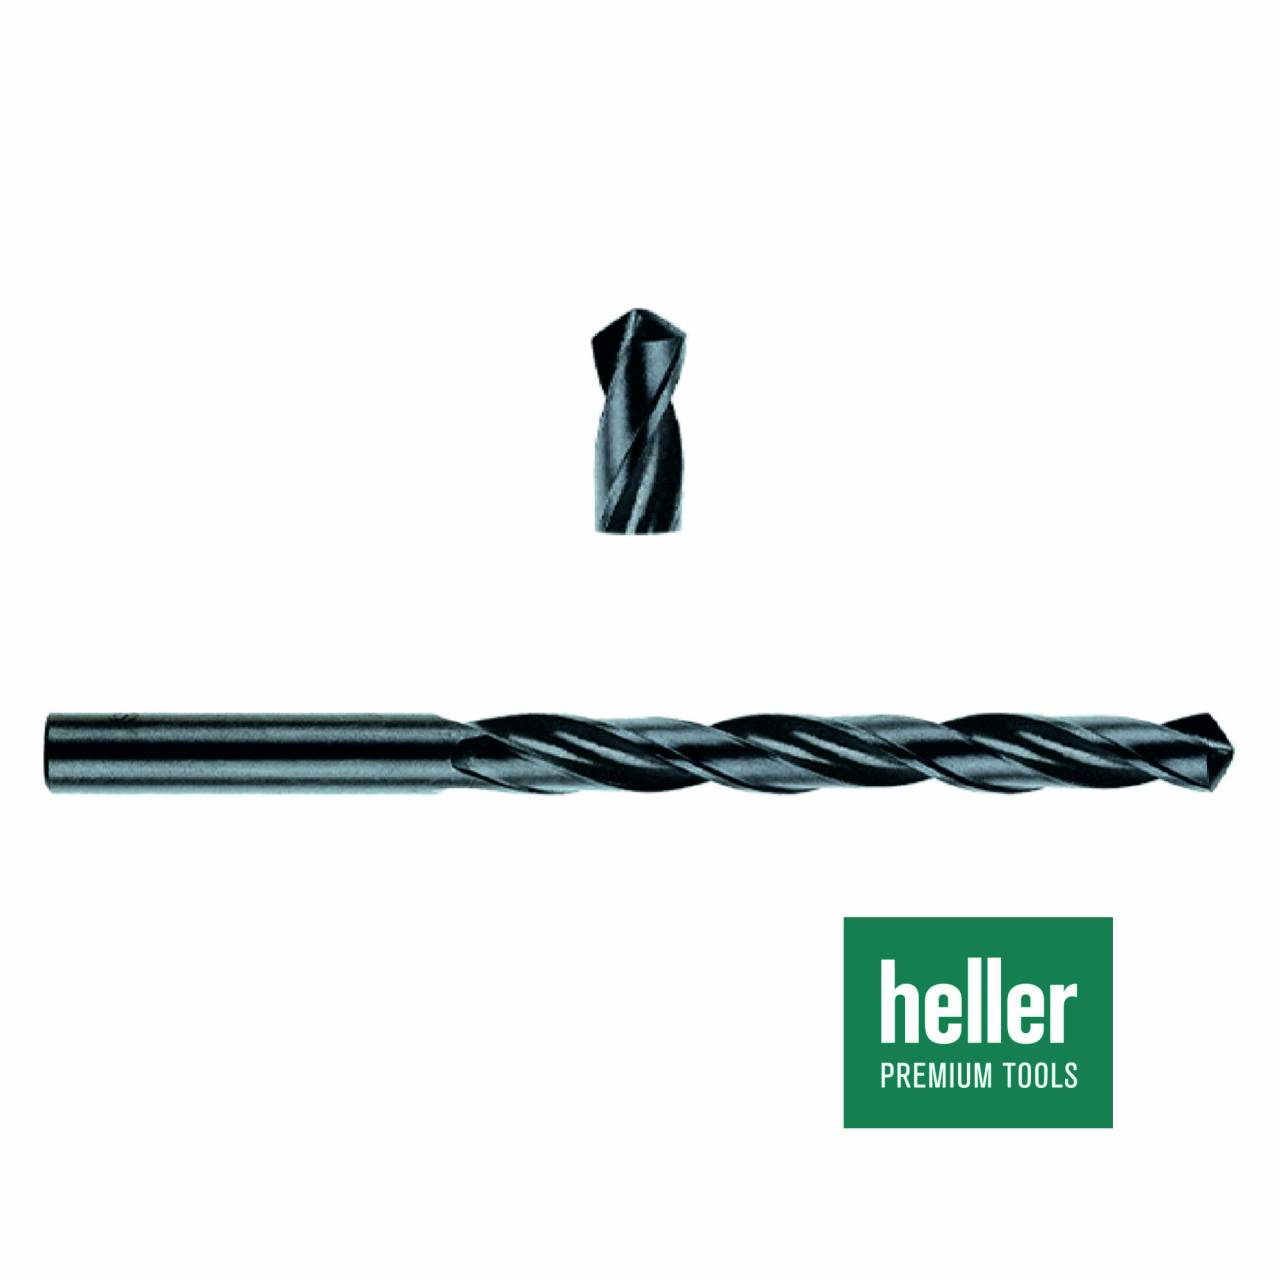 Stahlbohrer HSS-R 'Heller®' Ø 2 x 24 x 49 mm / Pck a 3 Stück